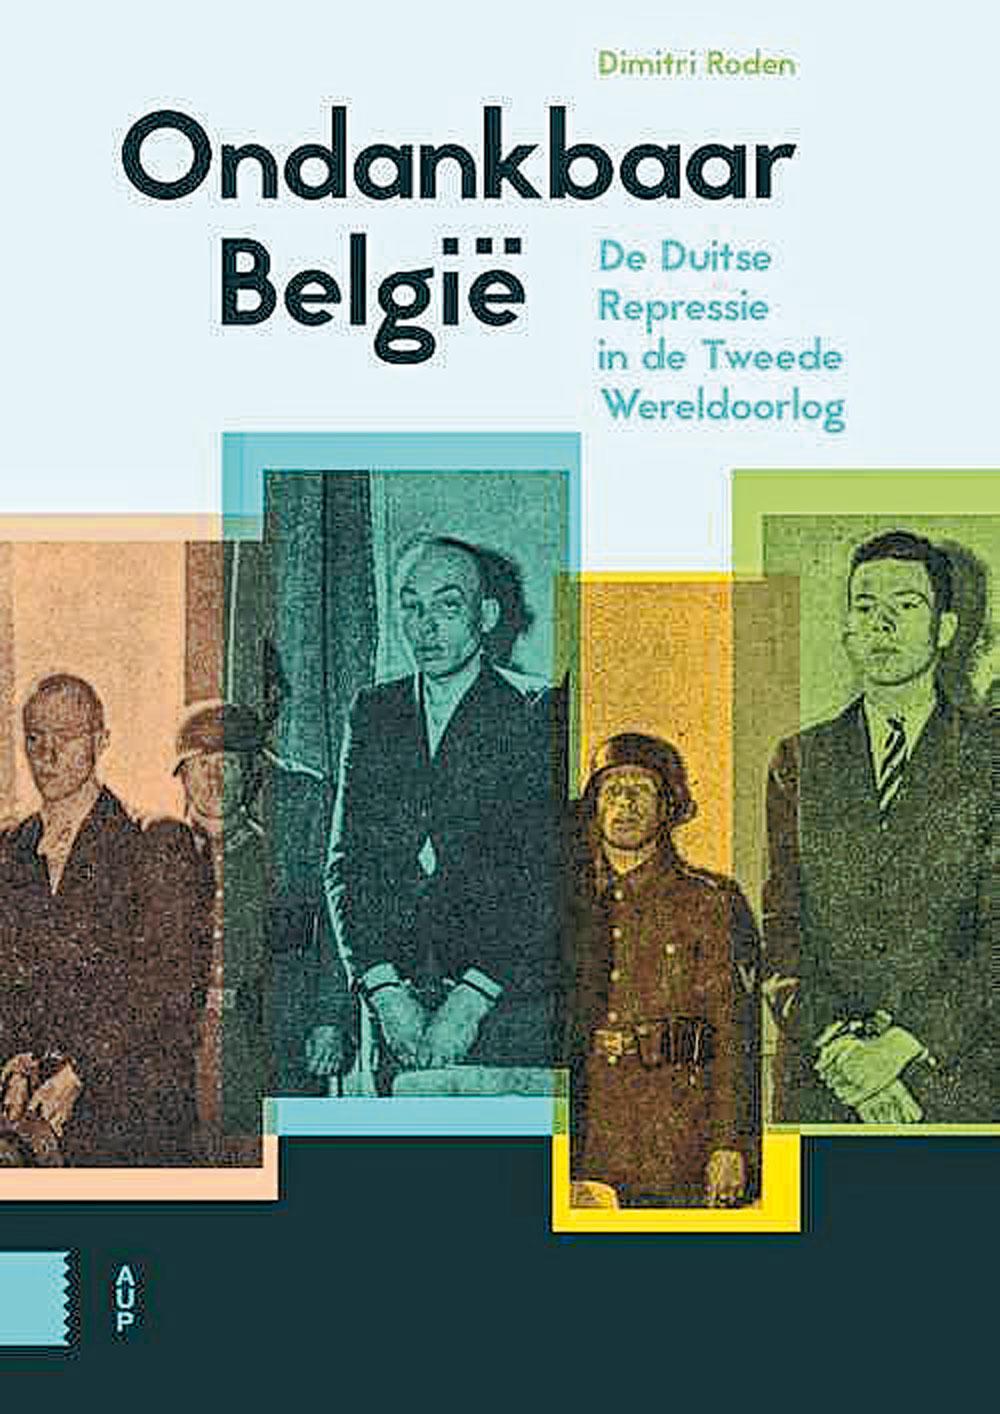 Dimitri Roden, Ondankbaar België: de Duitse repressie in de Tweede Wereldoorlog, Amsterdam University Press, 356 blz., 29,99 euro.